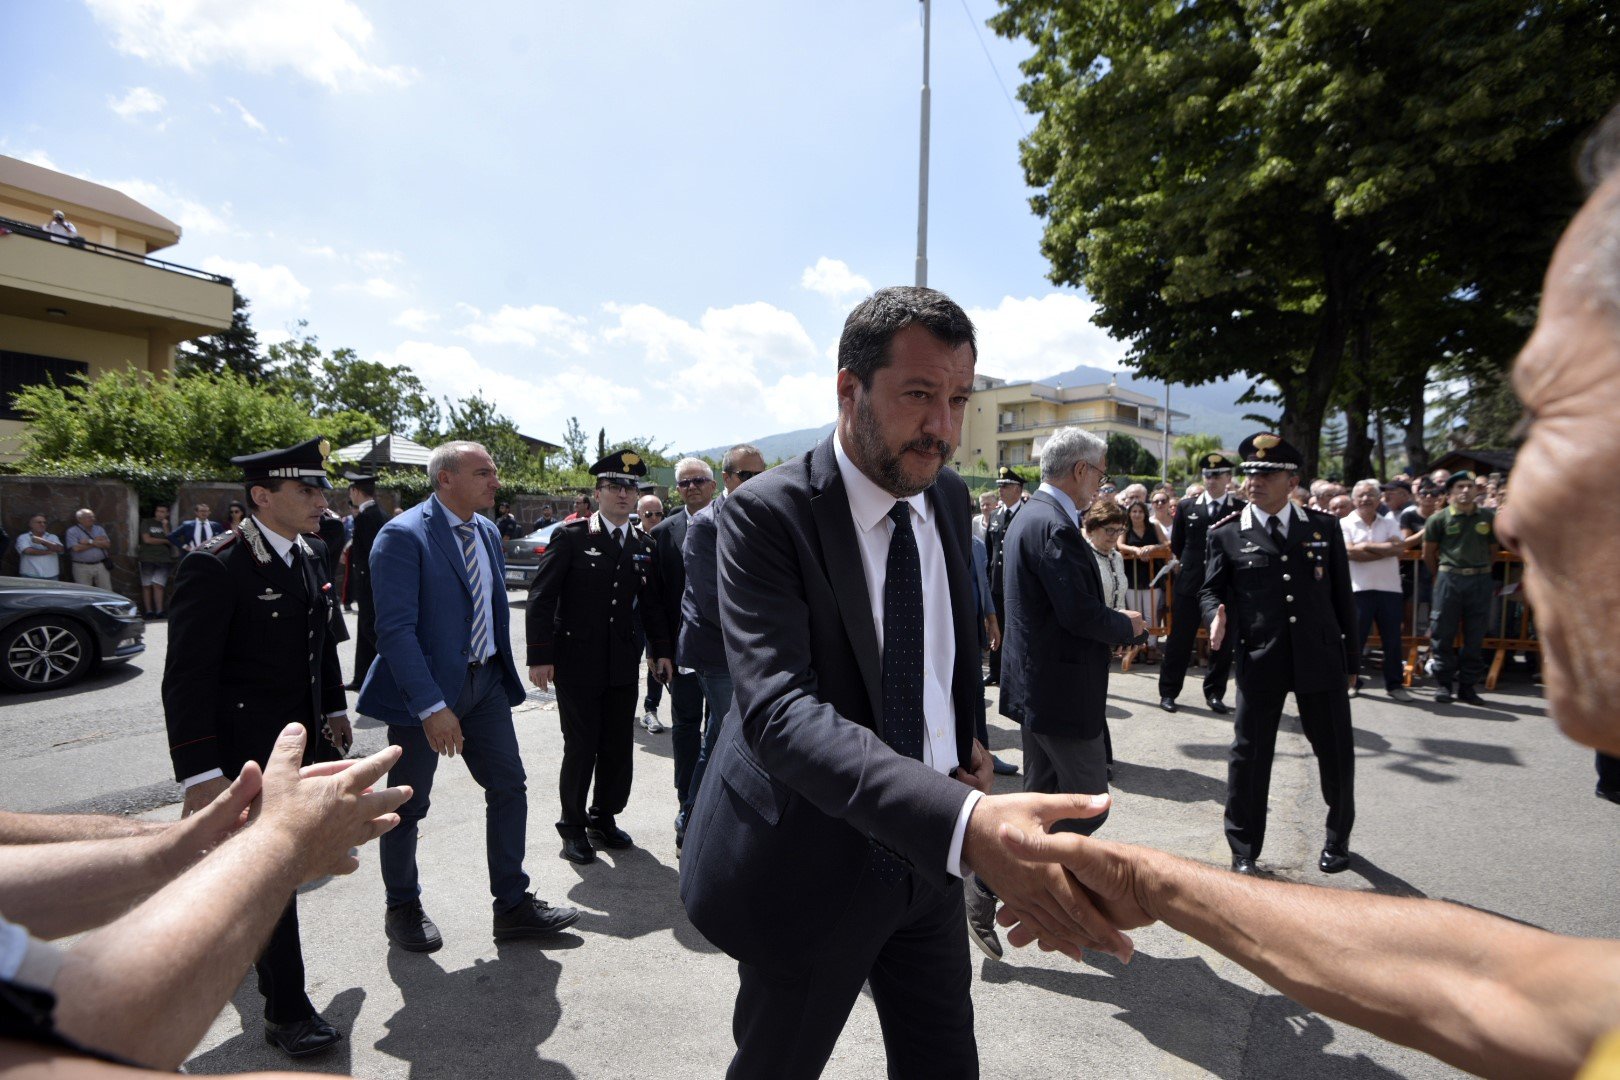 Així és com Salvini endolceix (a la manera catalana) el seu mal moment polític